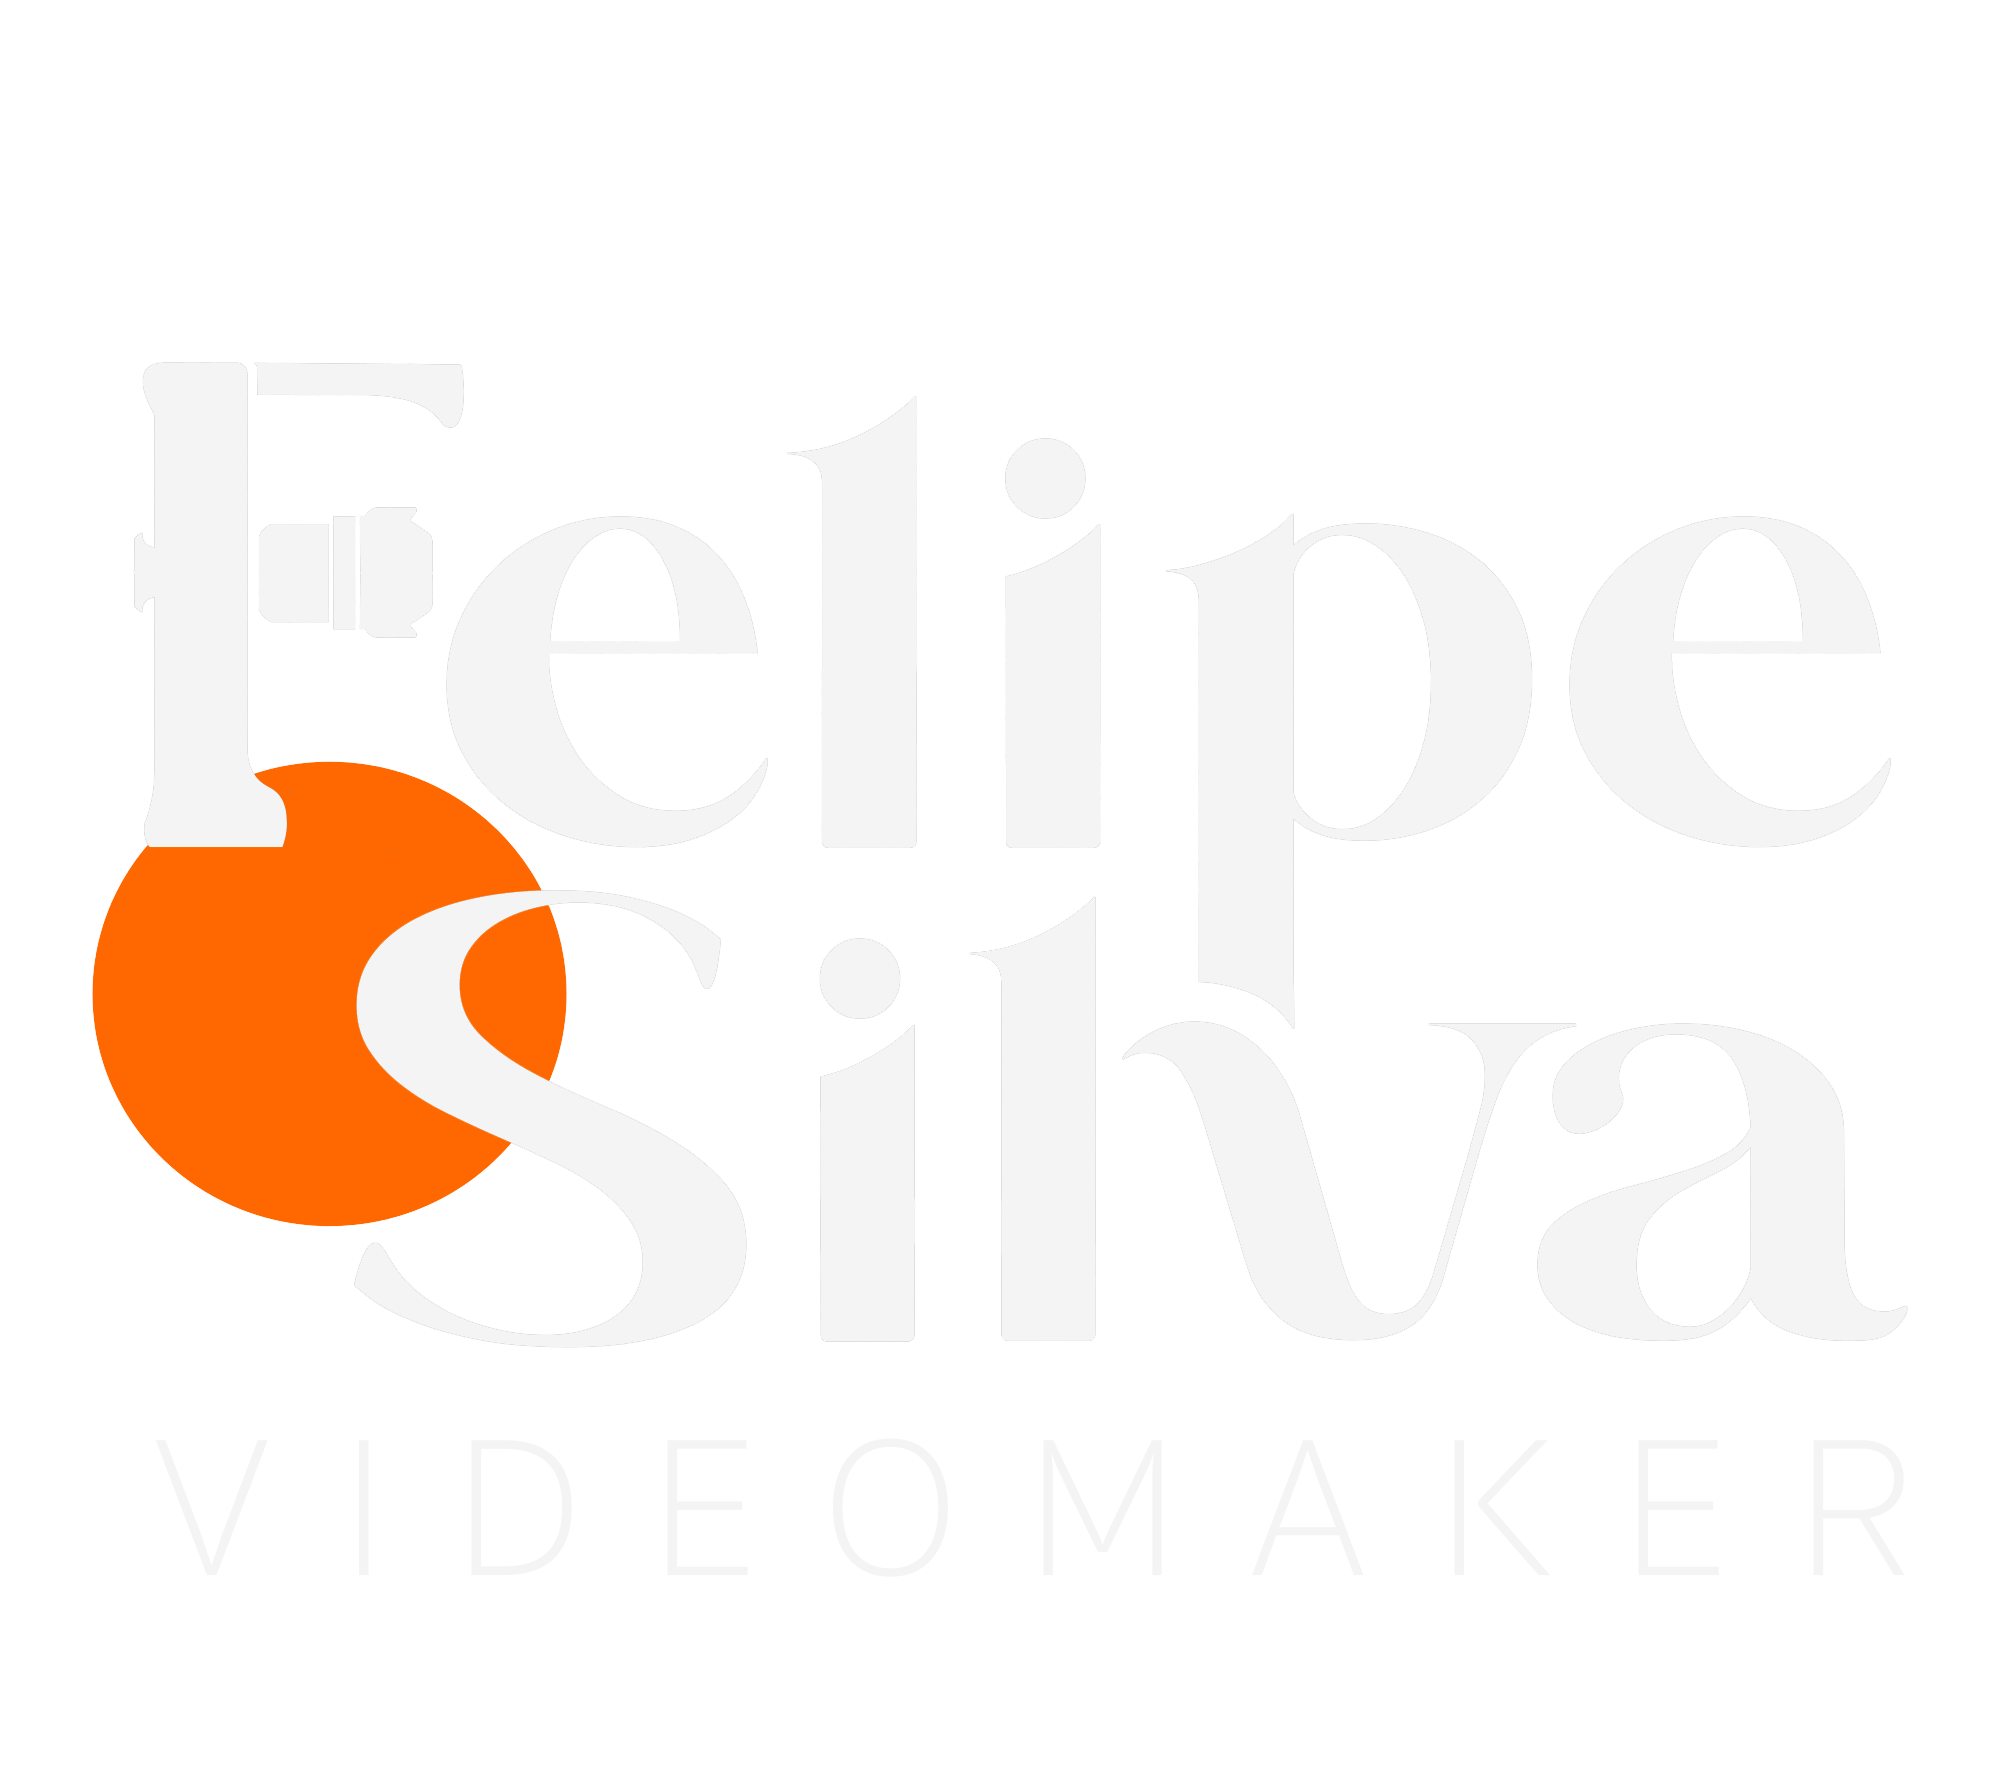 Felipe Silva